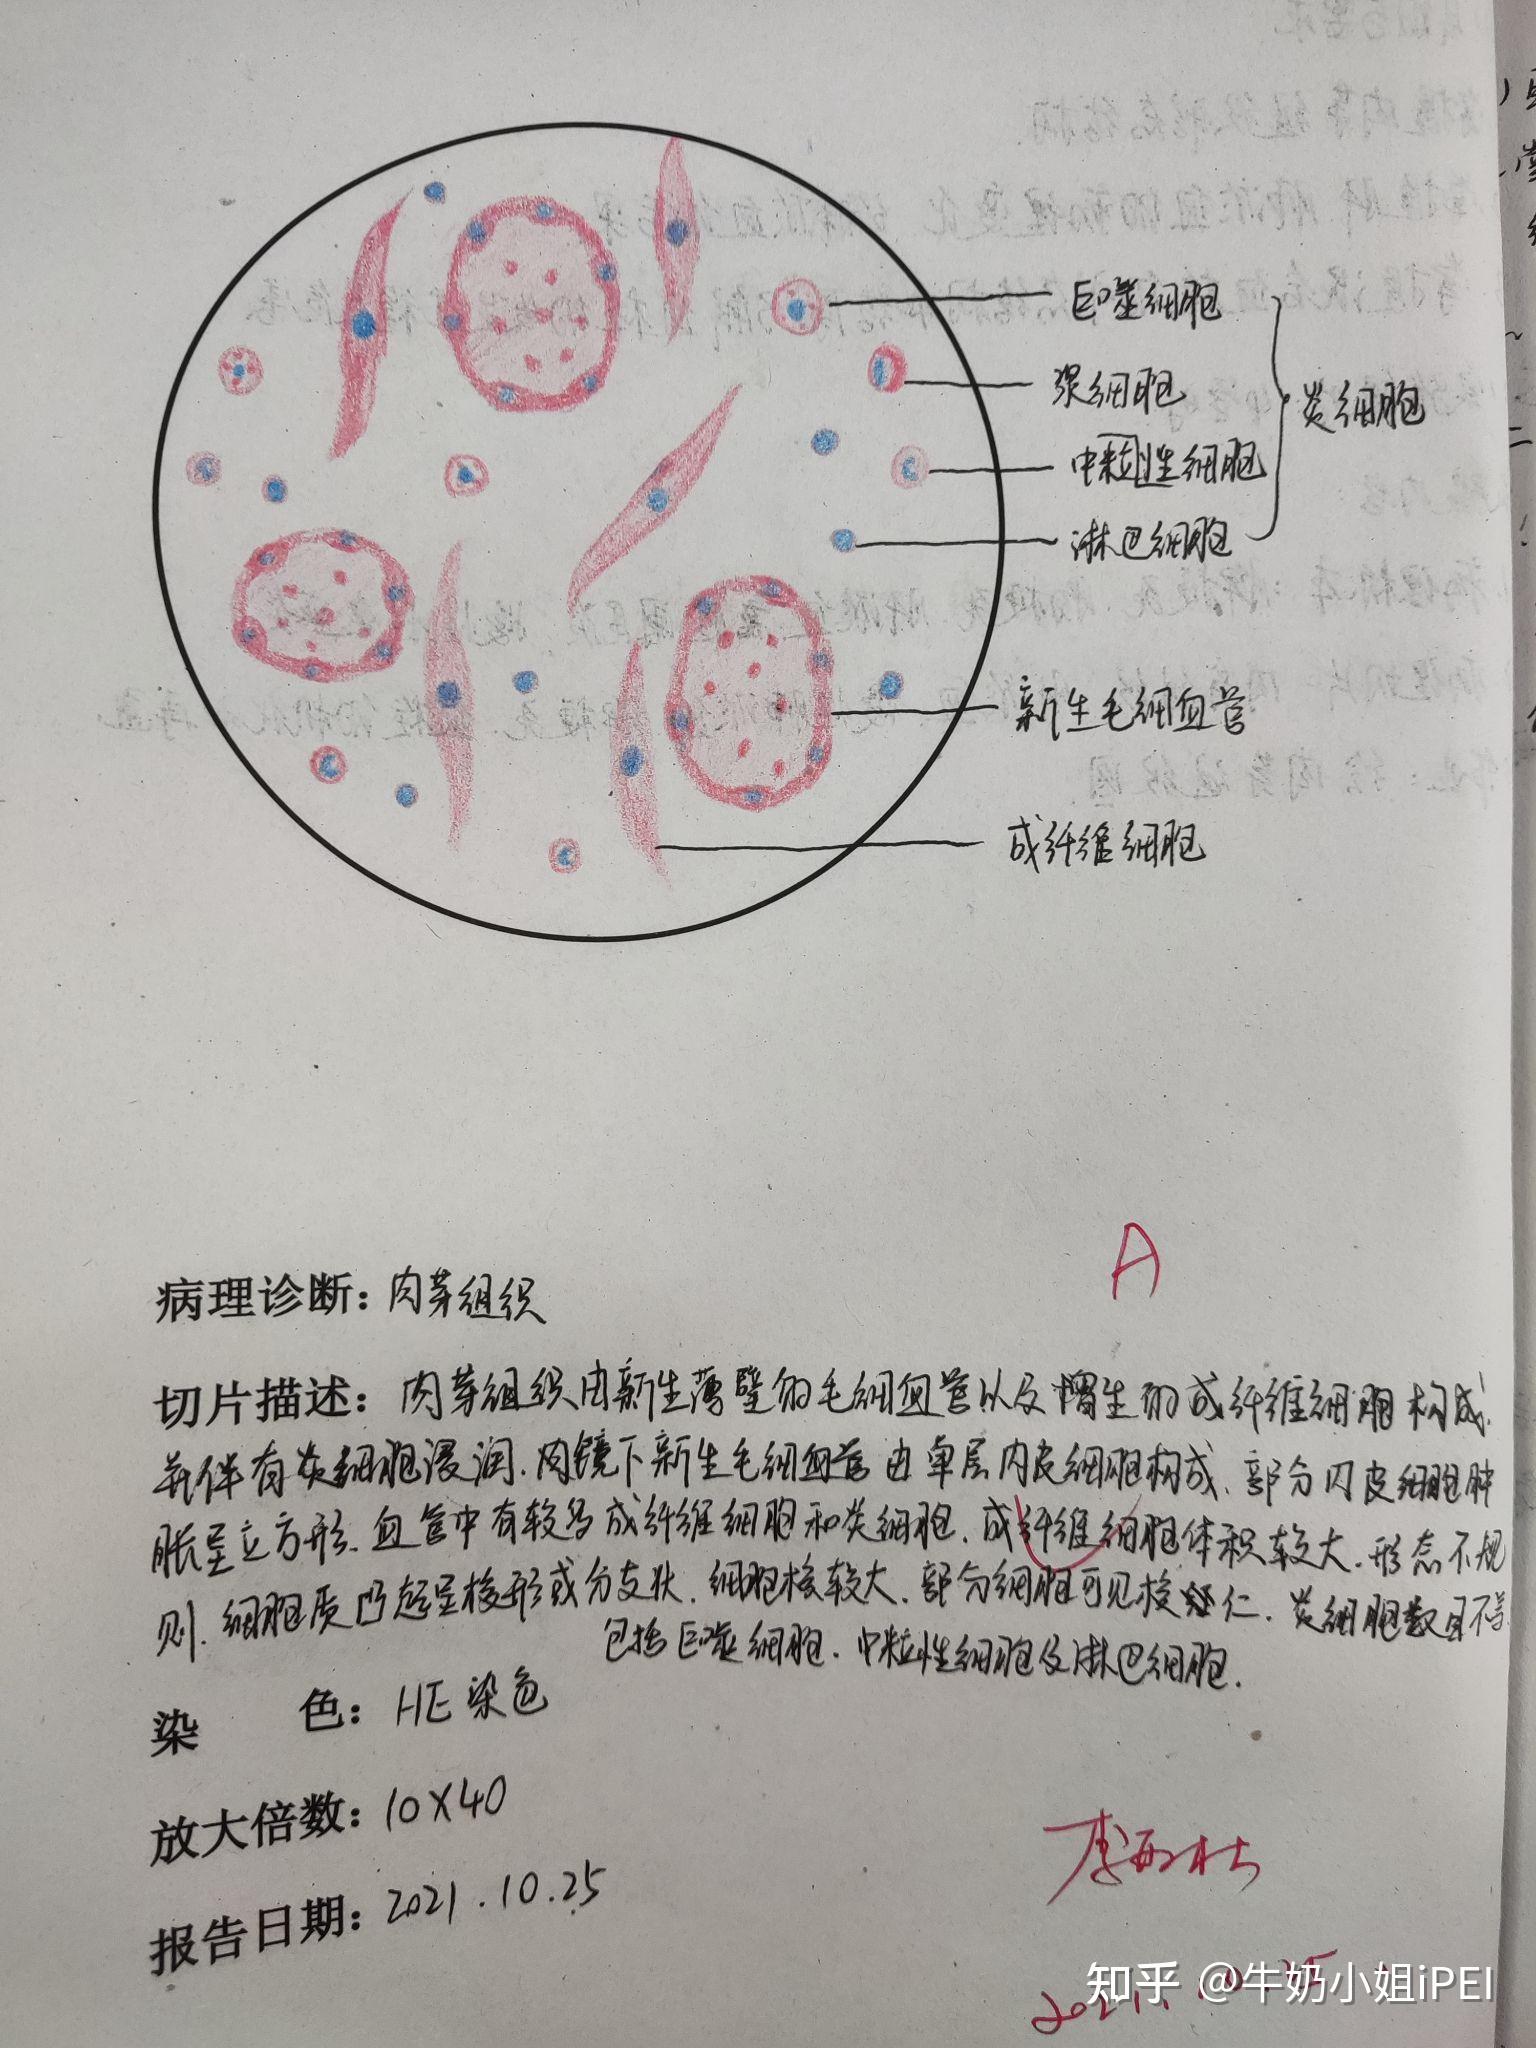 螺形菌红蓝铅笔绘图图片